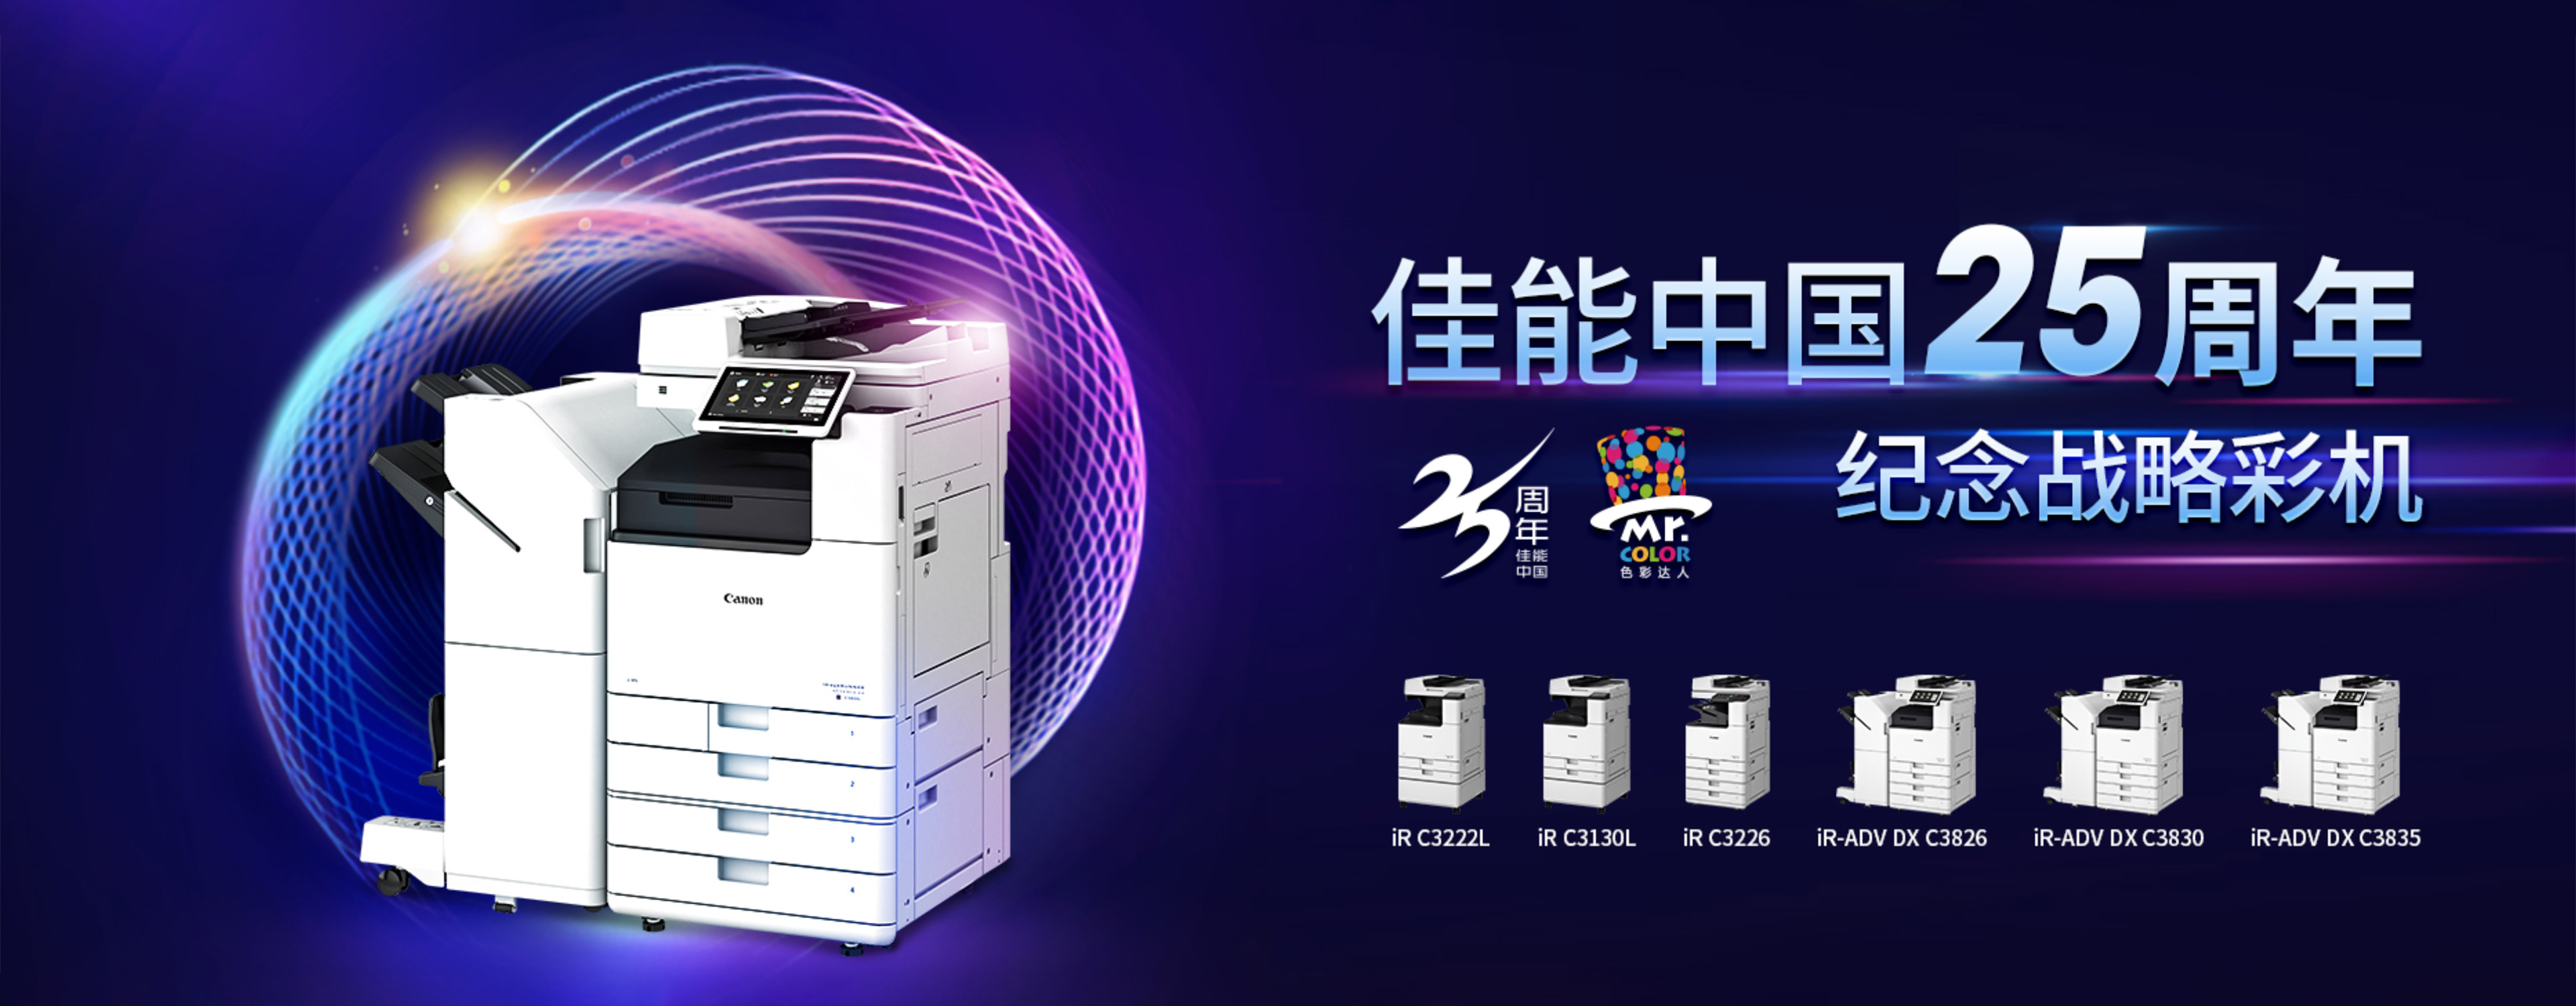 佳能C7580-彩色数码打印复印机-广州仁致信息科技有限公司